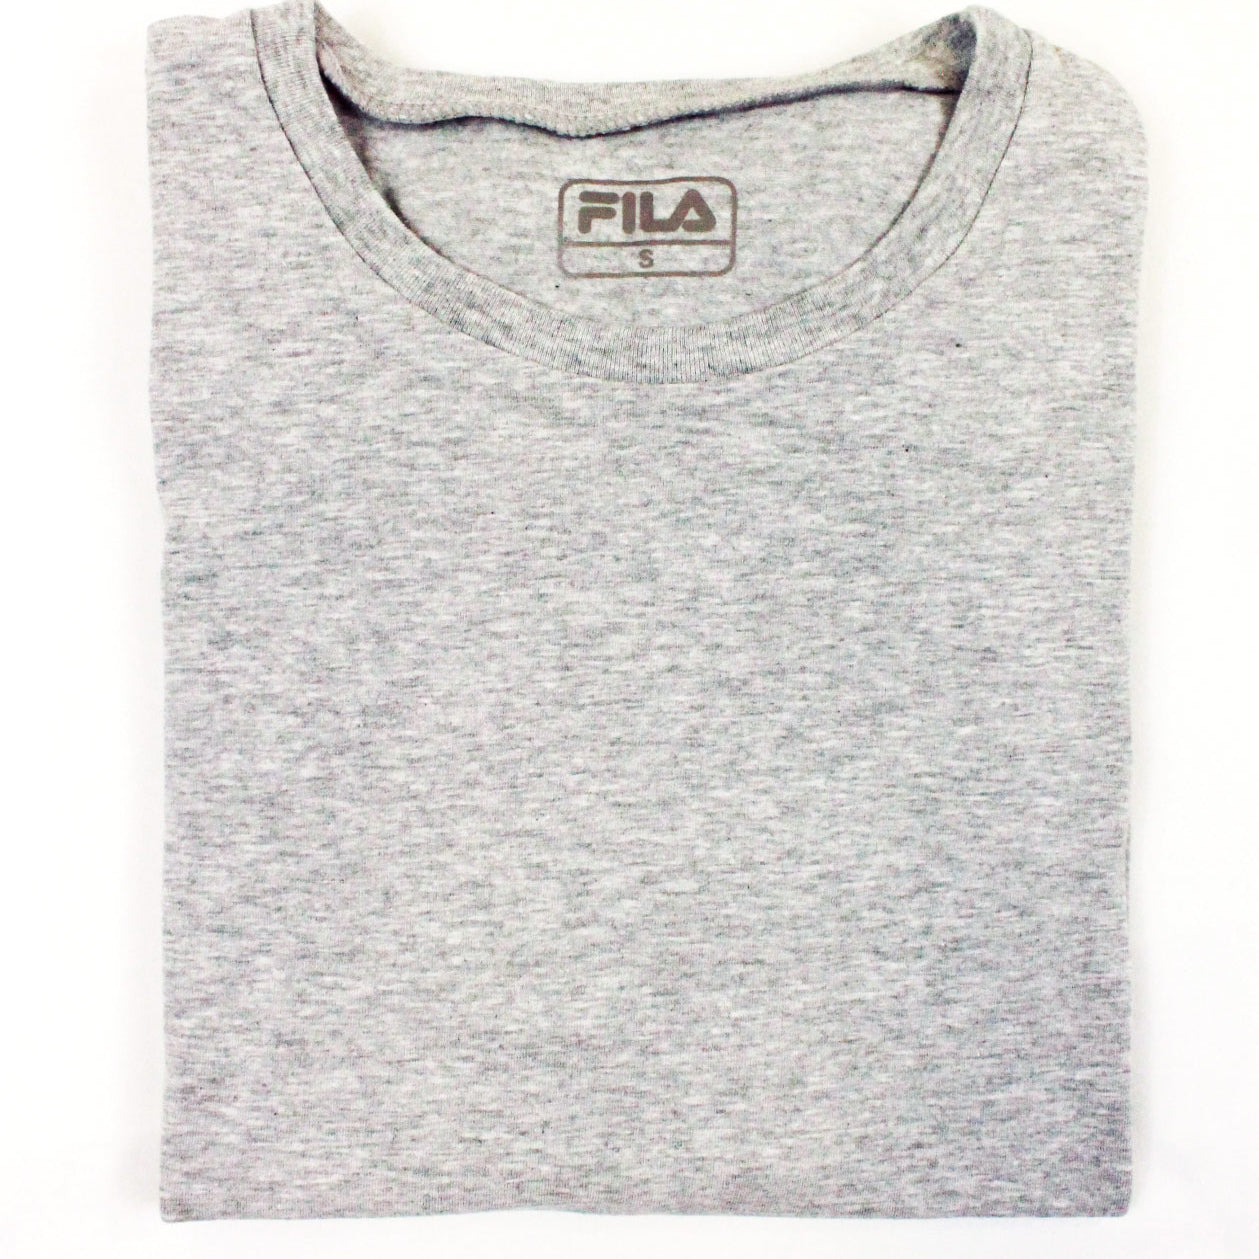 T-shirt Uomo cotone bielastico Fila 5139 - 2 pezzi + colori